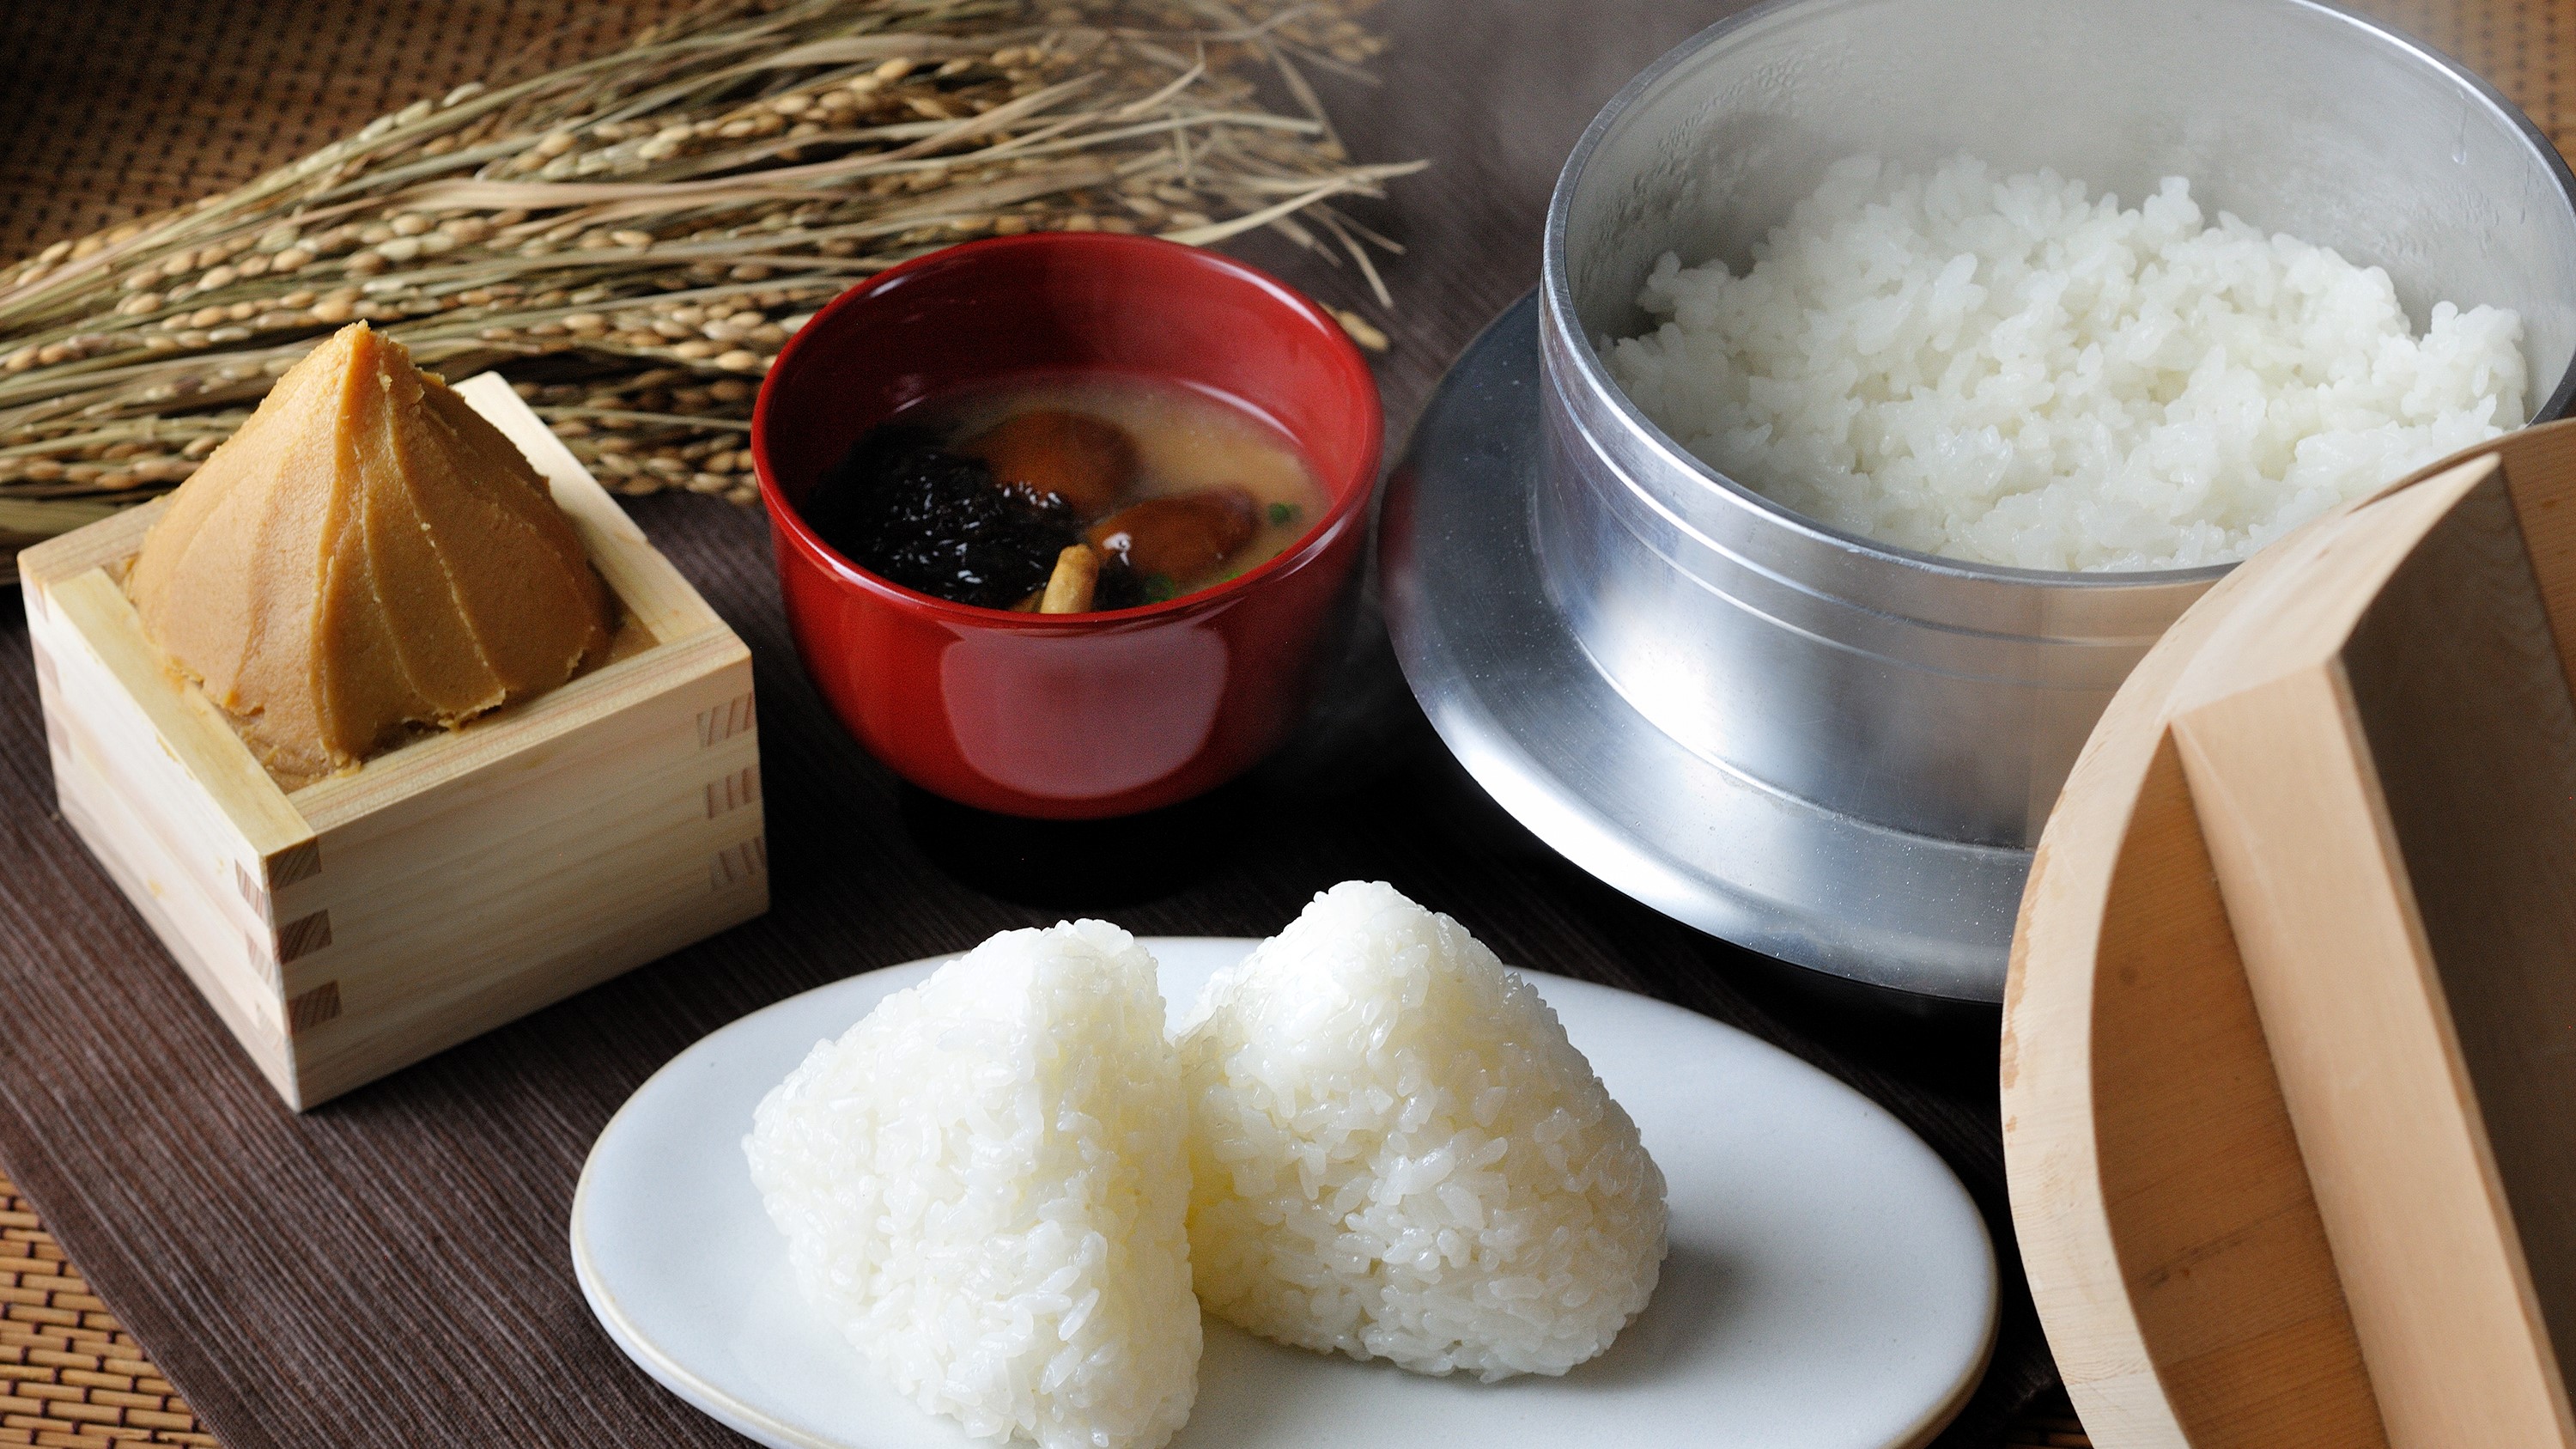 五つ星お米マイスター監修のお米と、坂本商店から仕入れたお味噌を使ったお味噌汁は絶品